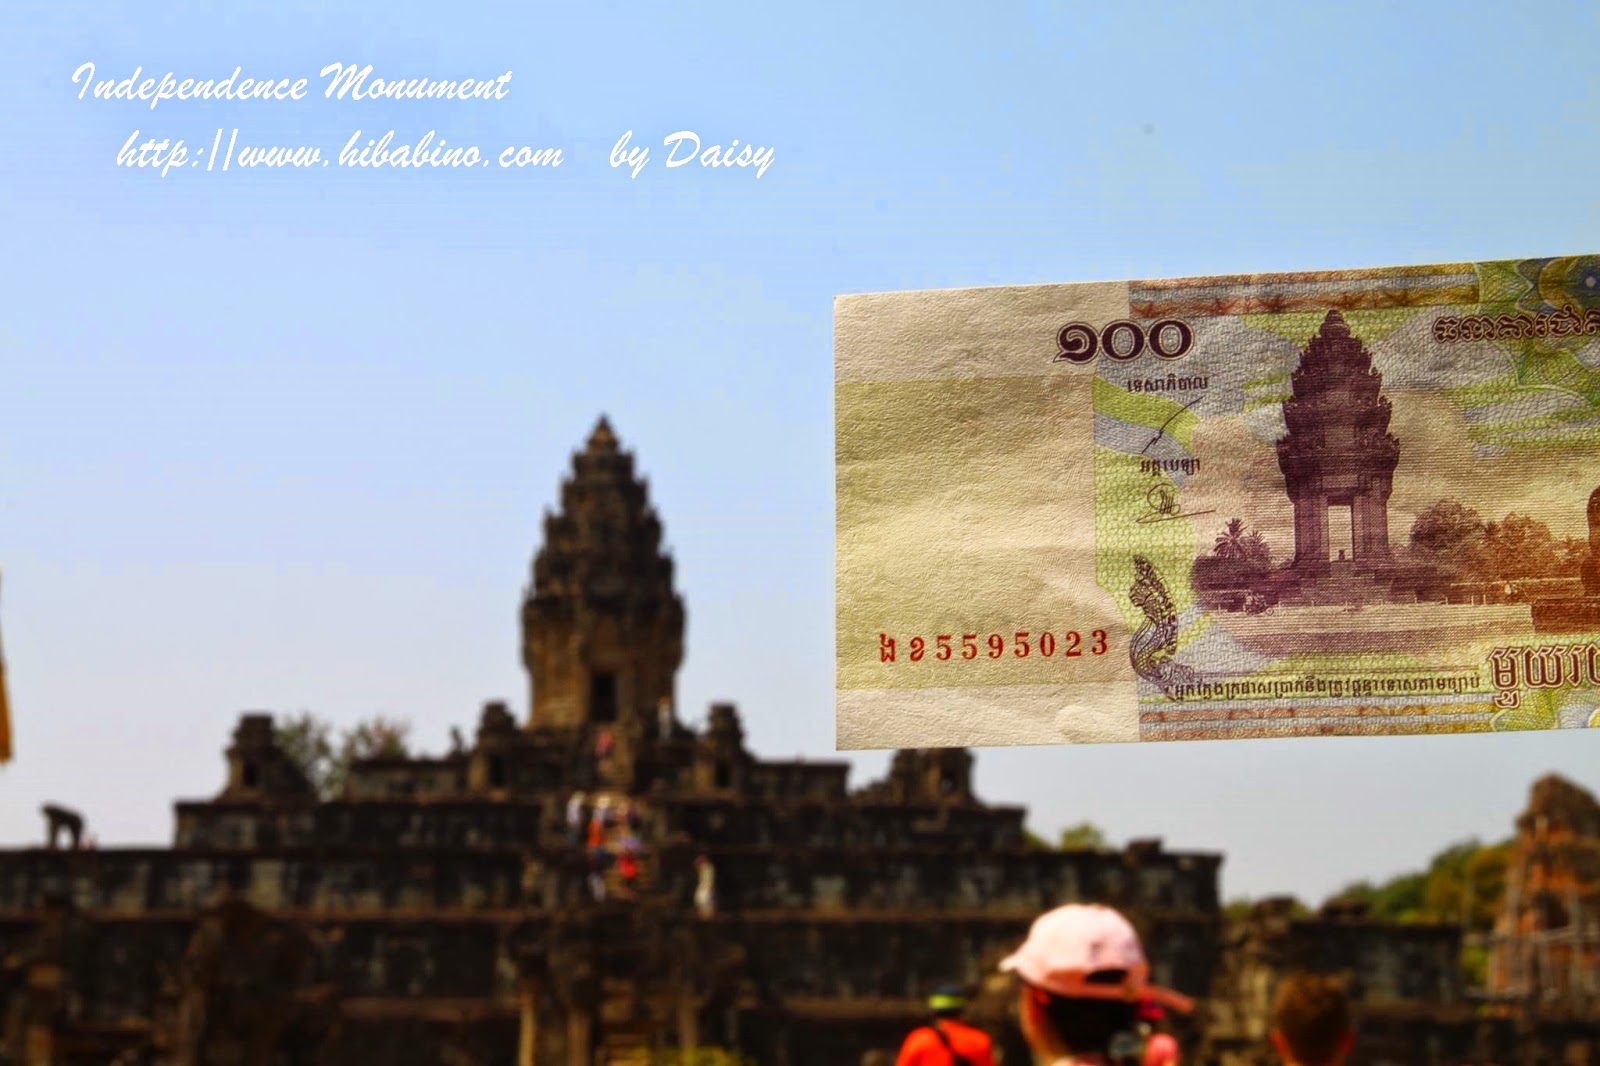 柬埔寨獨立紀念碑, 柬埔寨景點, 金邊獨立紀念碑, 金邊景點, 金邊旅遊, 獨立廣場, Independence Monument-13